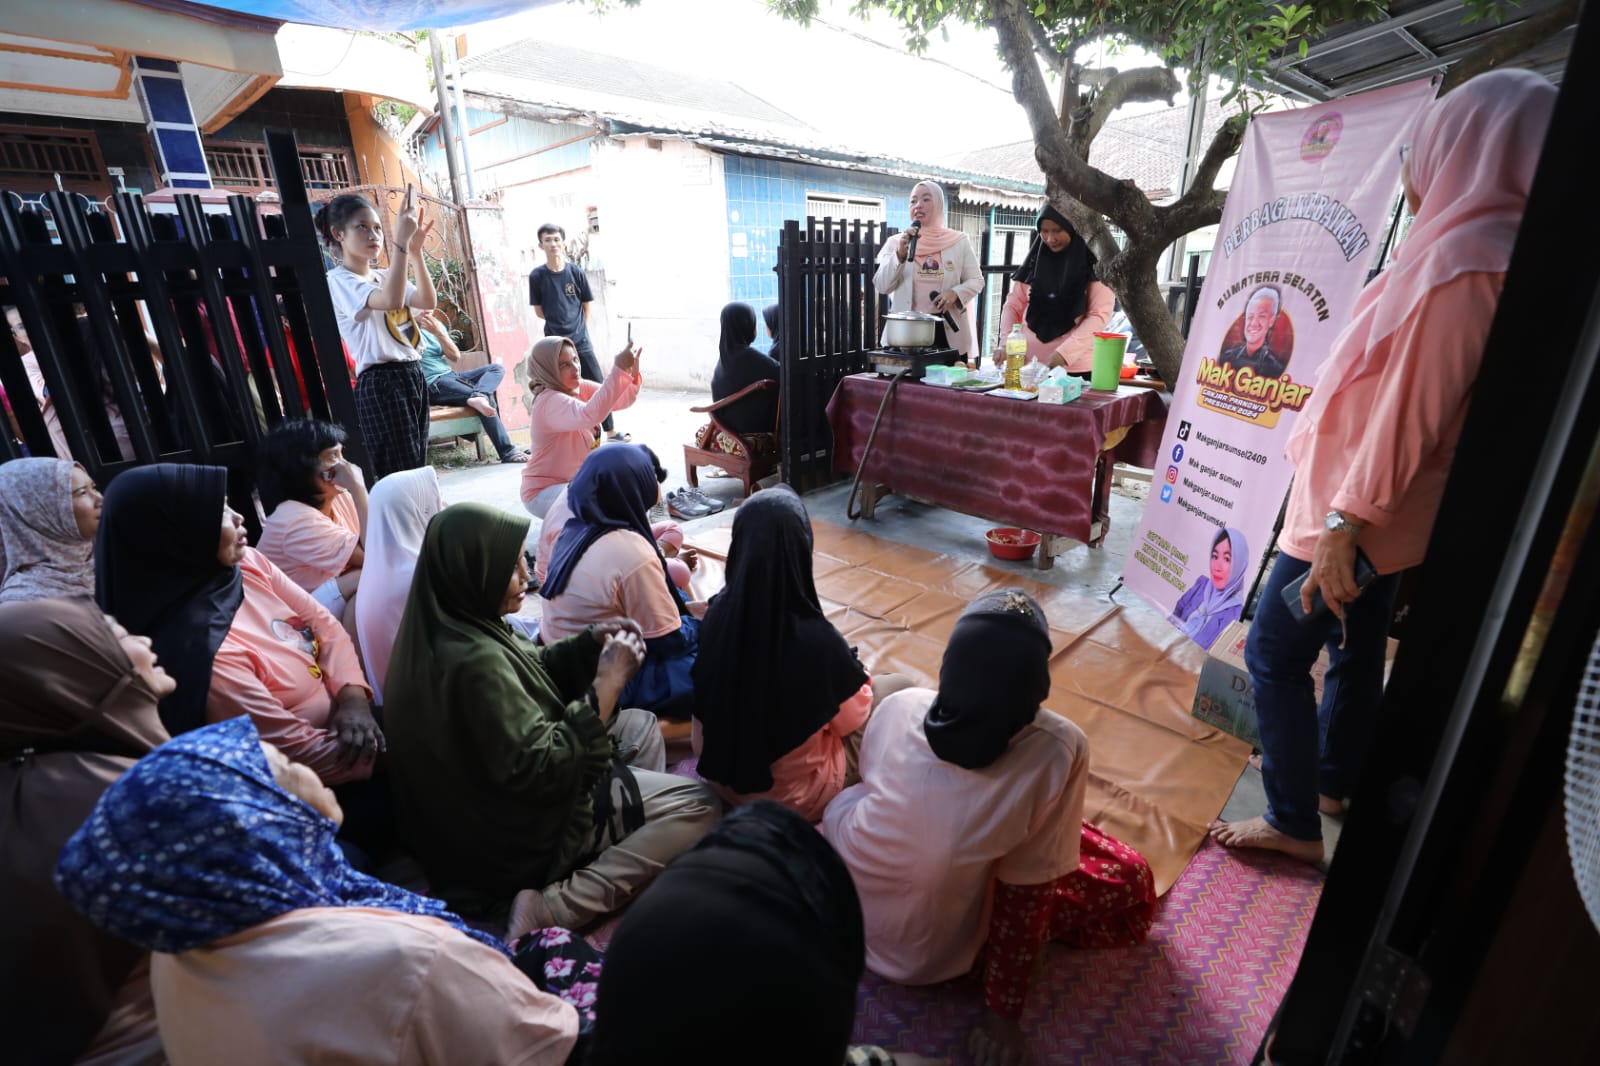 Mak Ganjar Buat Pelatihan Pembuatan Martabak Kentang untuk Ibu-Ibu di Palembang